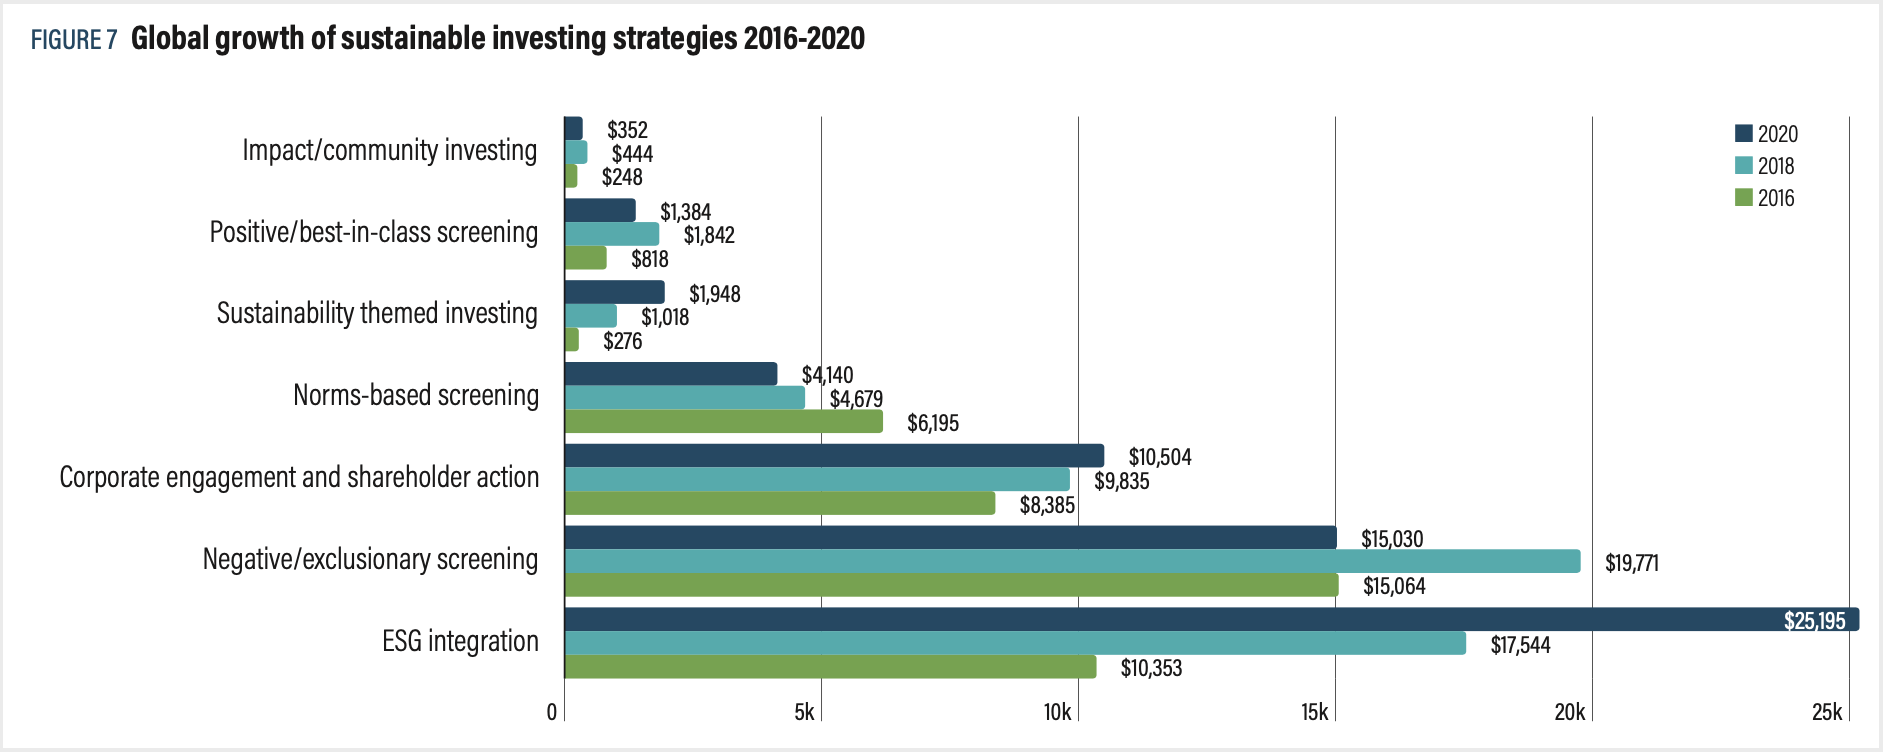 Croissance mondiale des stratégies d'investissement durable 2016-2020